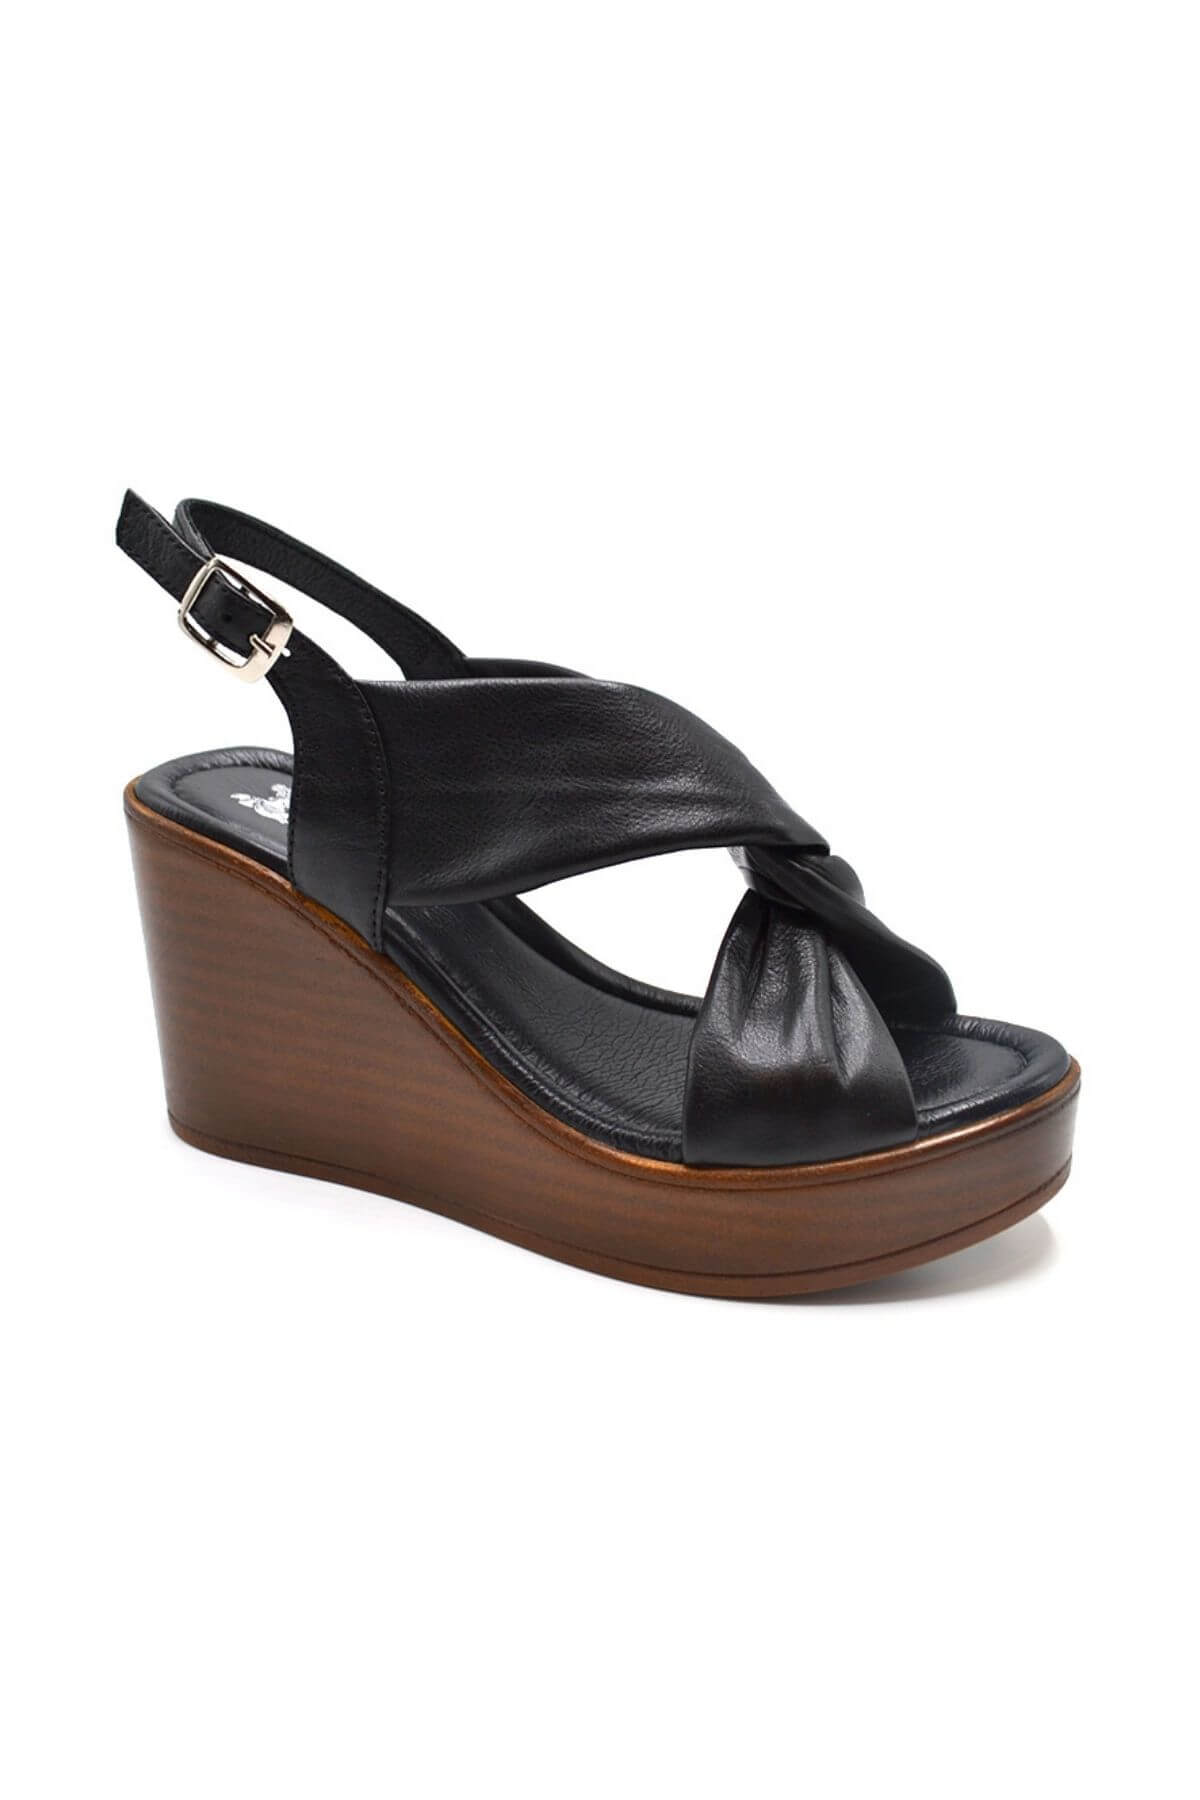 Kadın Dolgu Topuk Deri Sandalet Siyah 2310803Y